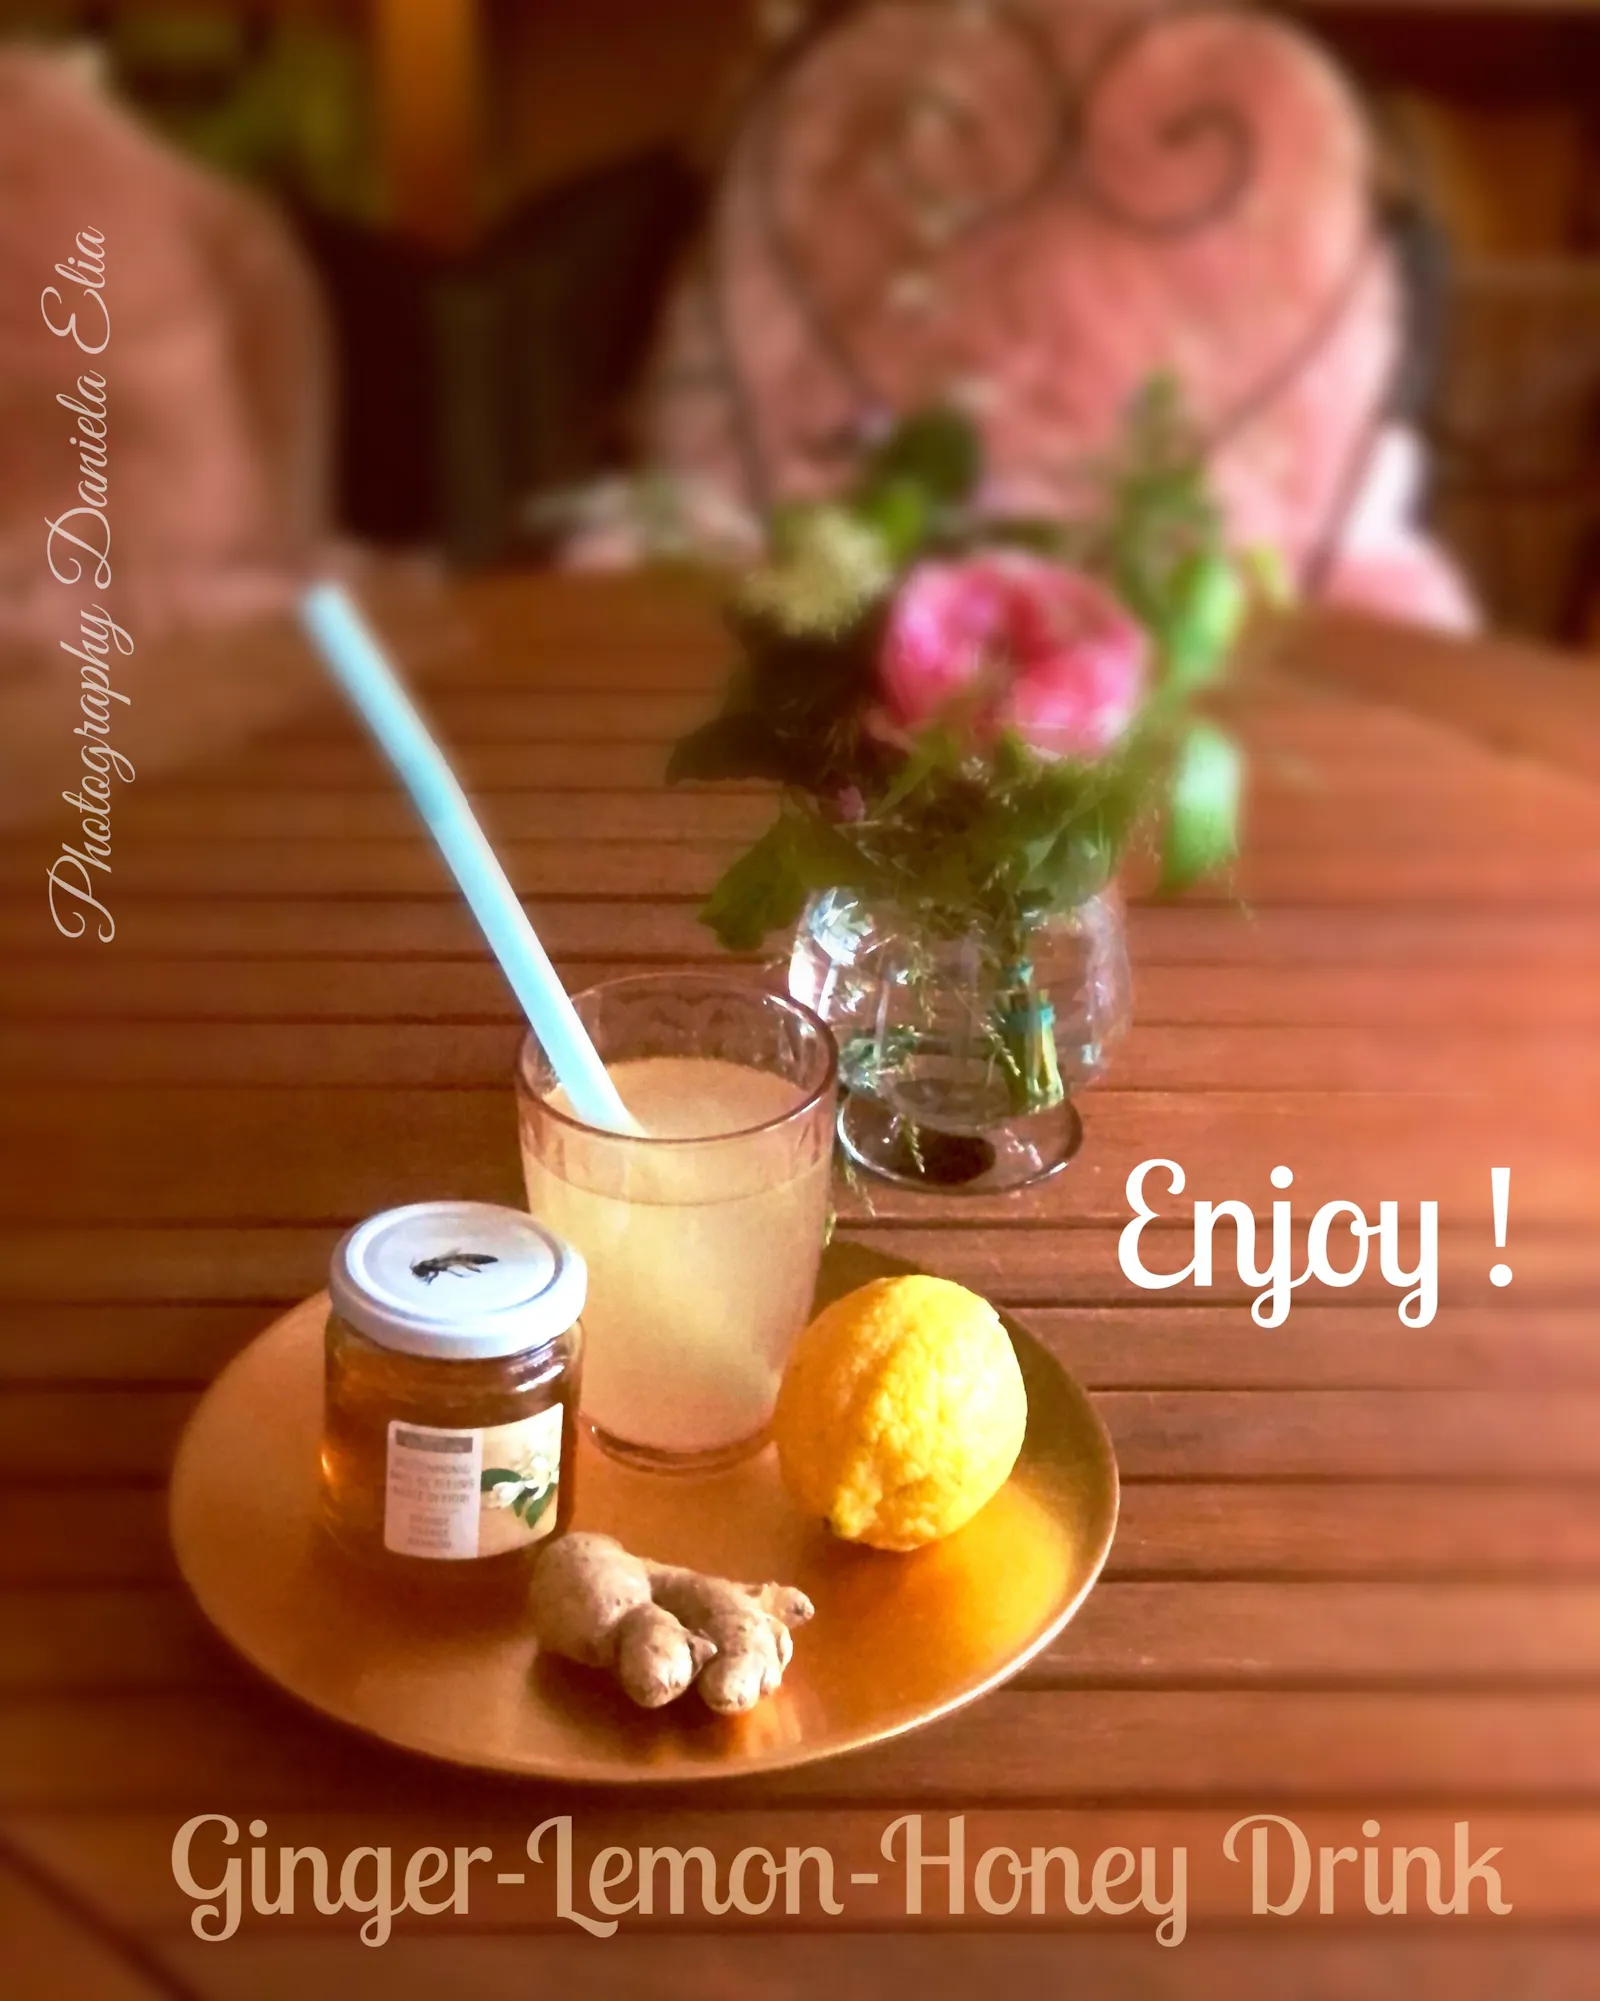 Ingwer-Zitronen-Honig Drink, enjoy !
Ginger - Lemon - Honey Drink